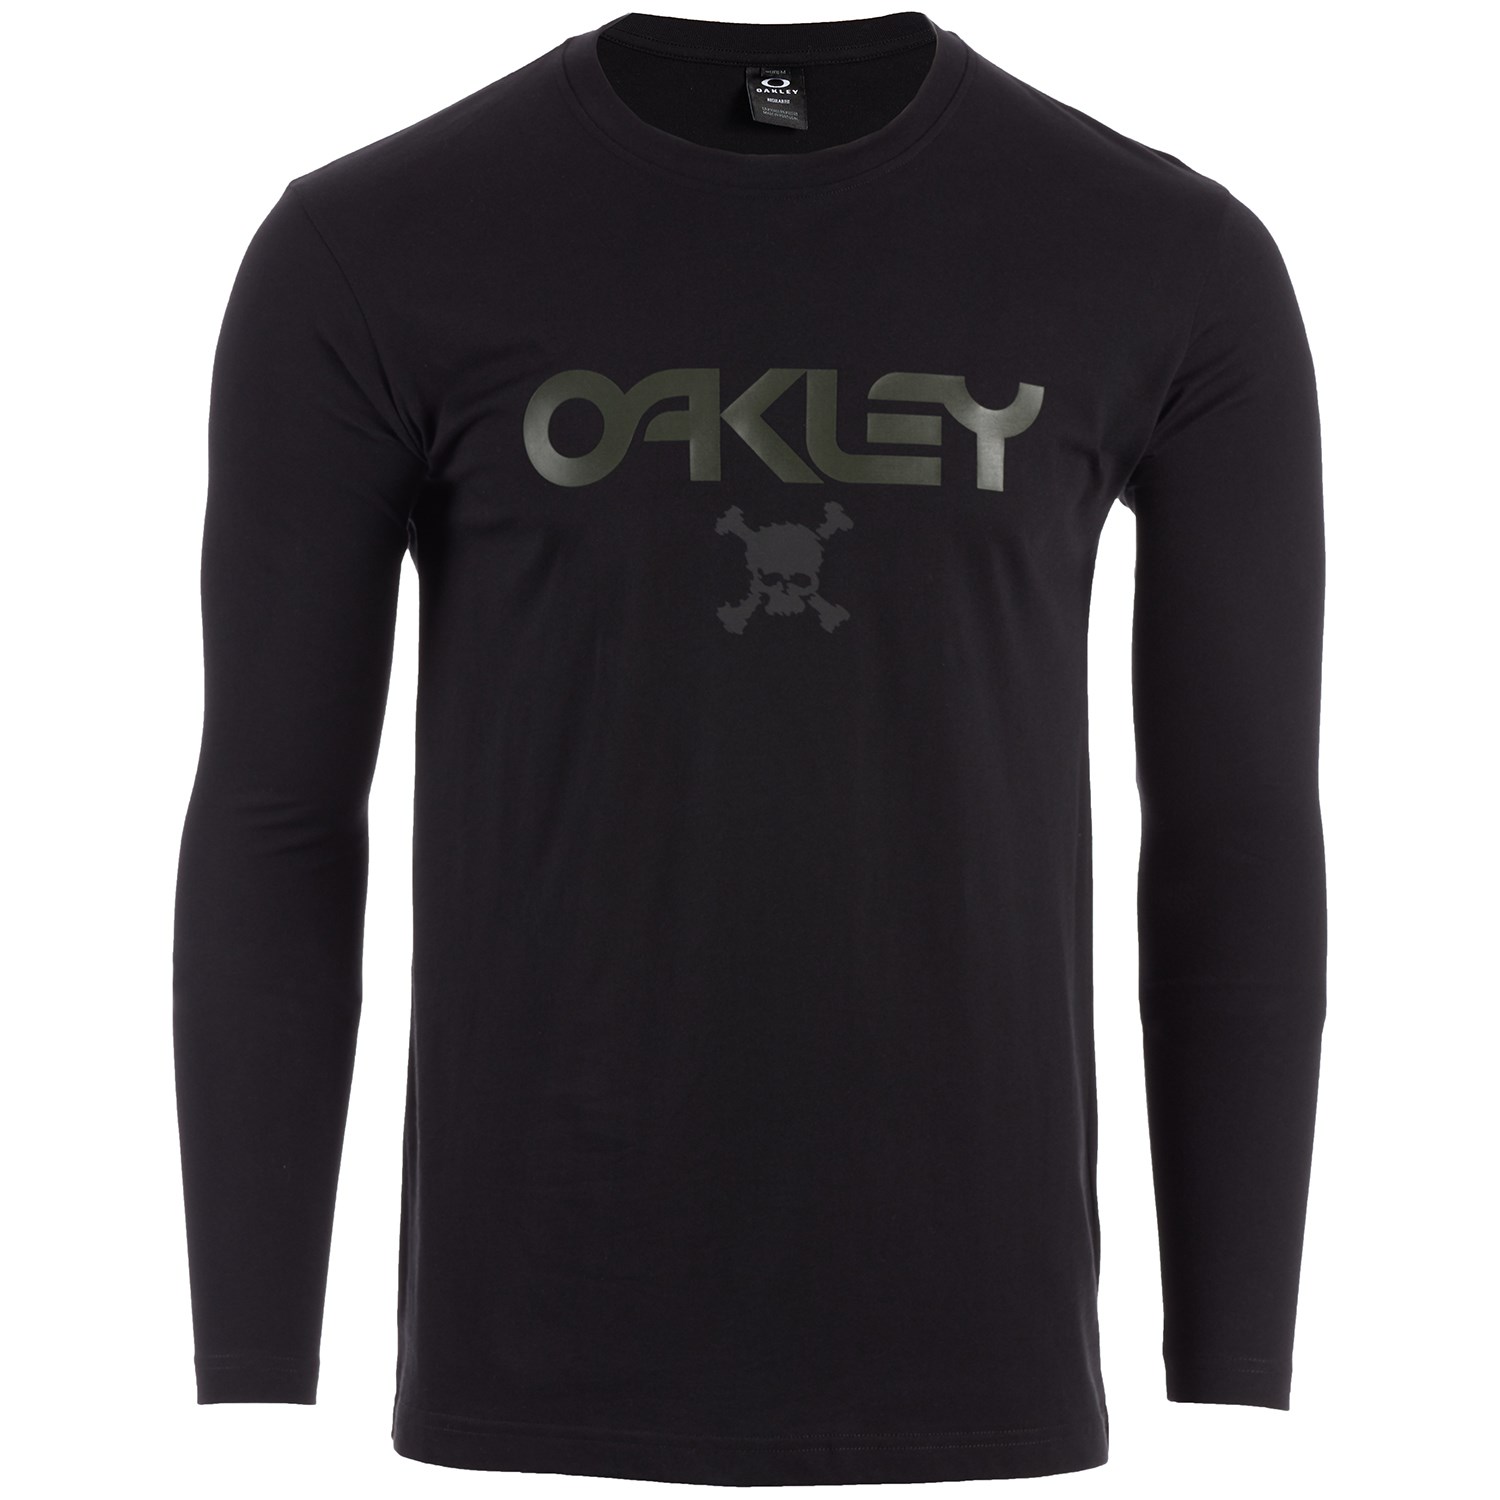 OAKLEY Skull Bleach Graphic Shirt usXL-